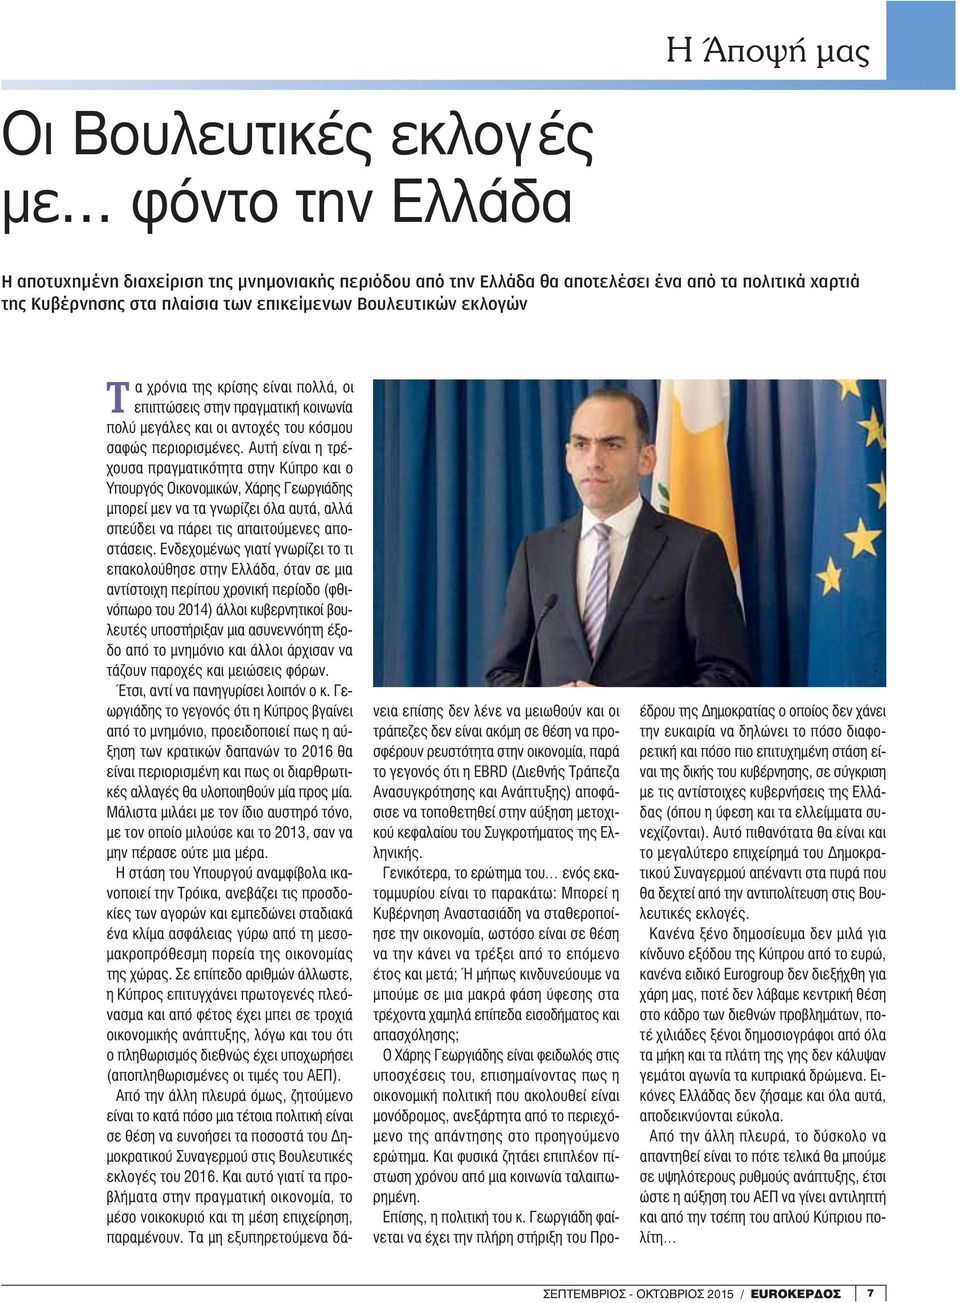 Αυτή είναι η τρέχουσα πραγματικότητα στην Κύπρο και ο Υπουργός Οικονομικών, Χάρης Γεωργιάδης μπορεί μεν να τα γνωρίζει όλα αυτά, αλλά σπεύδει να πάρει τις απαιτούμενες αποστάσεις.